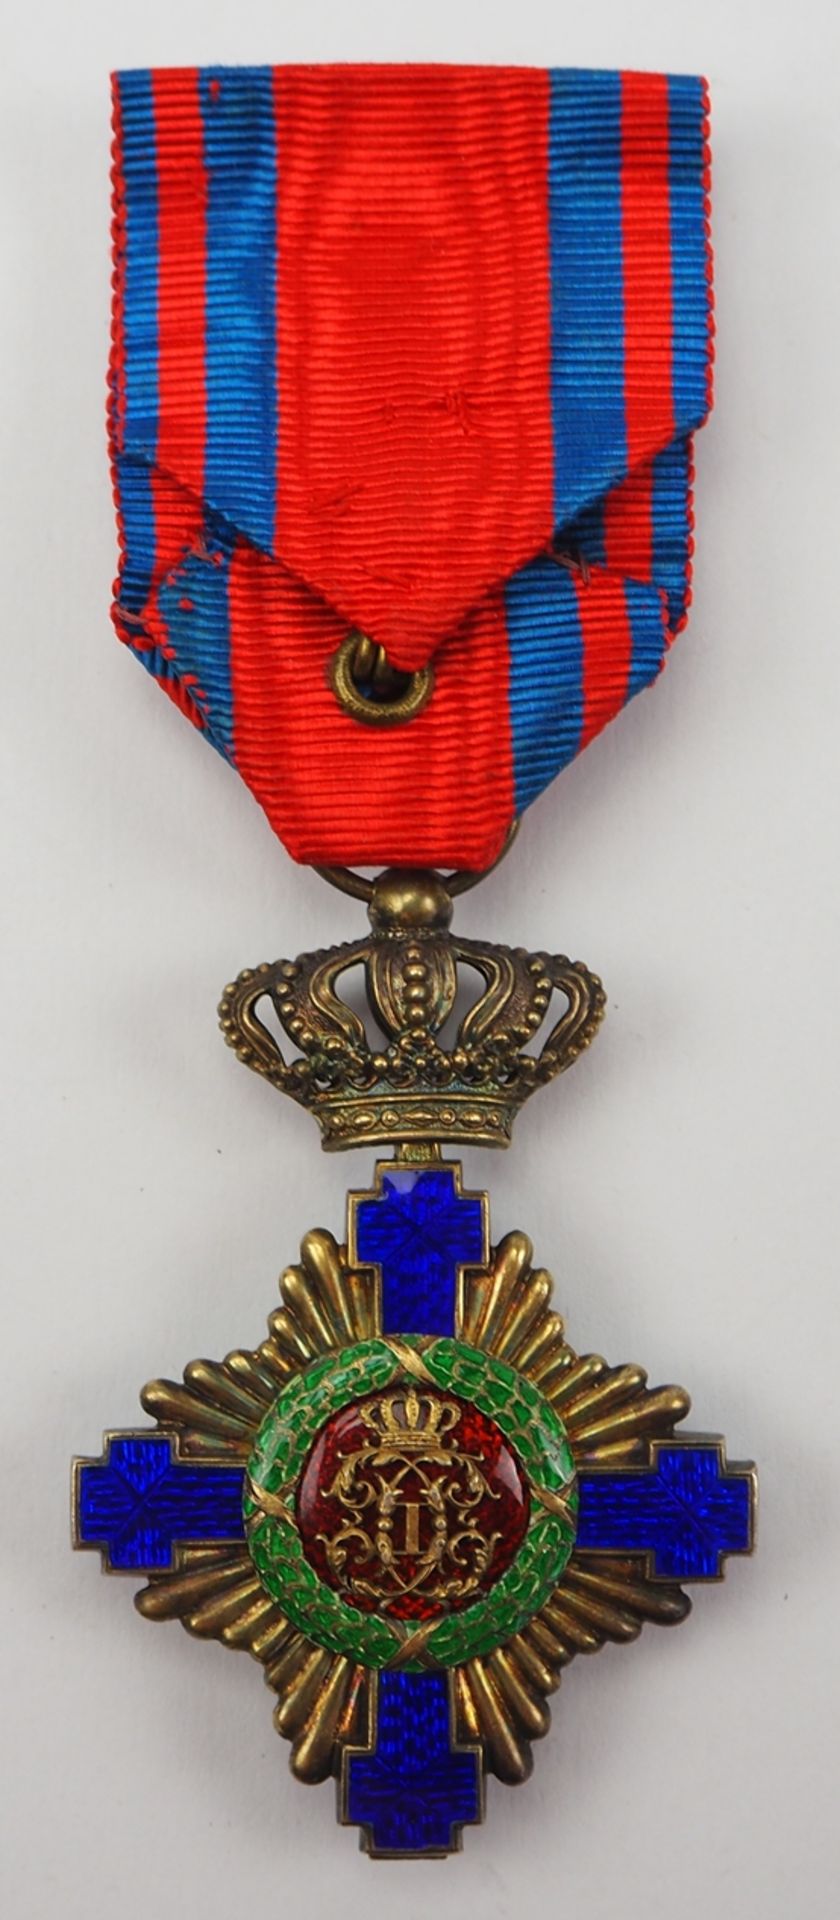 Rumänien: Orden des Sterns von Rumänien, 1. Modell (1864-1932), Offizierskreuz. - Bild 3 aus 3